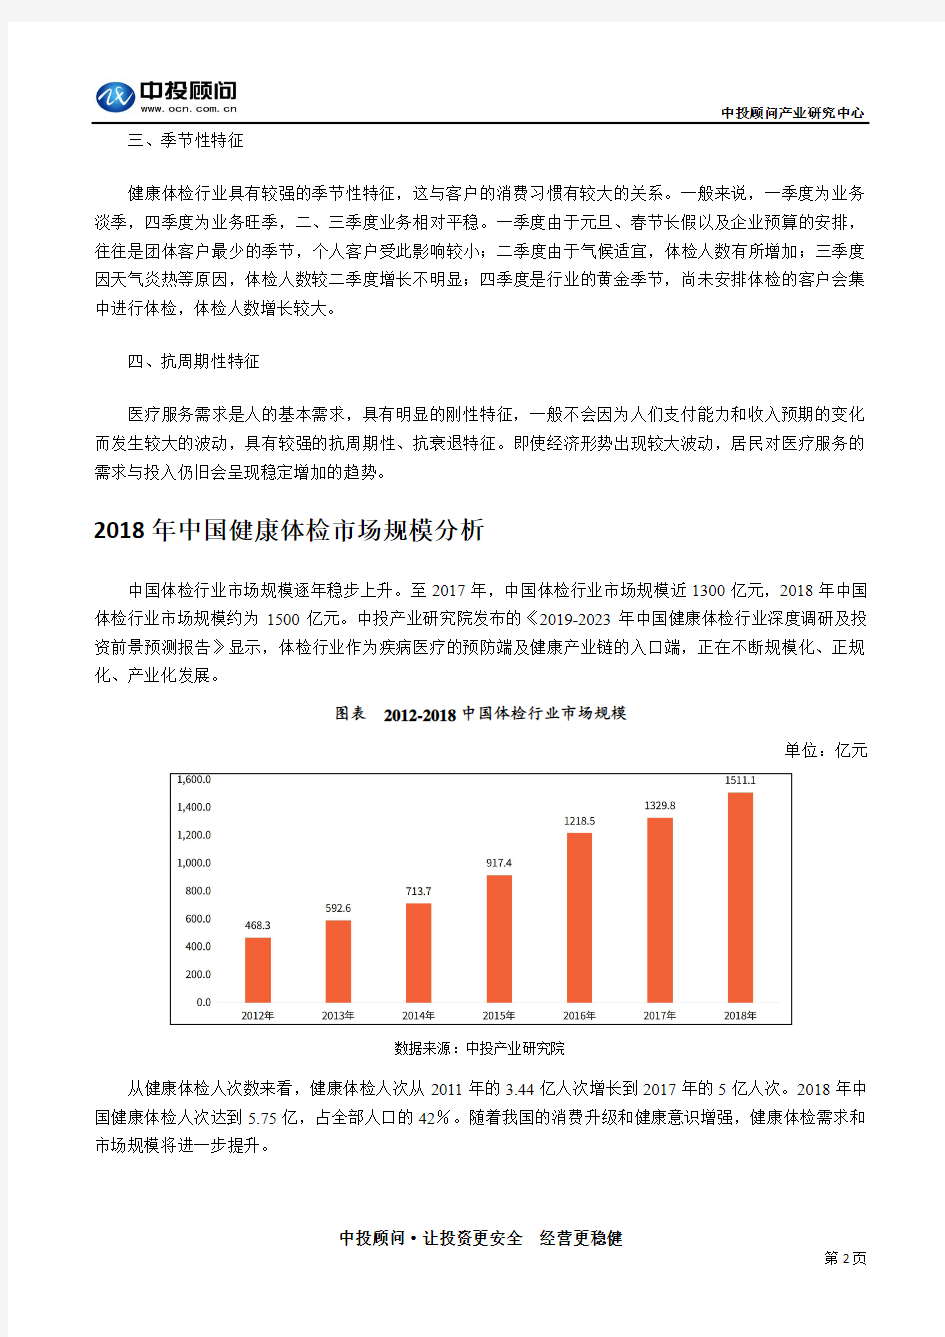 未来5年中国健康体检行业特征规模的分析